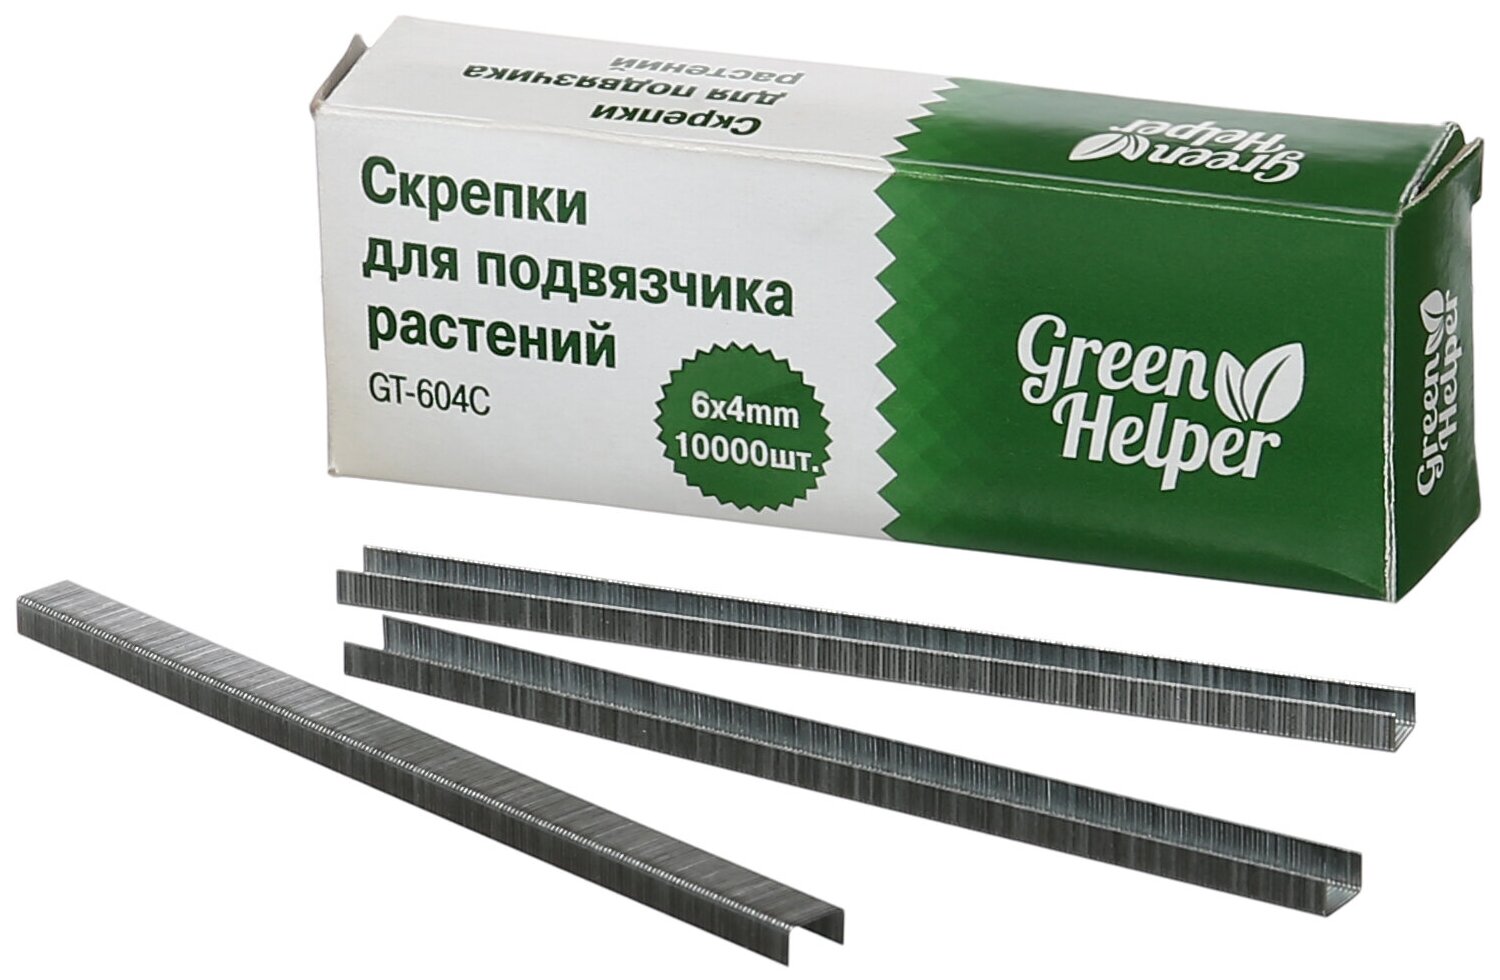 Скрепки для подвязчика растений Green Helper 10 000шт.